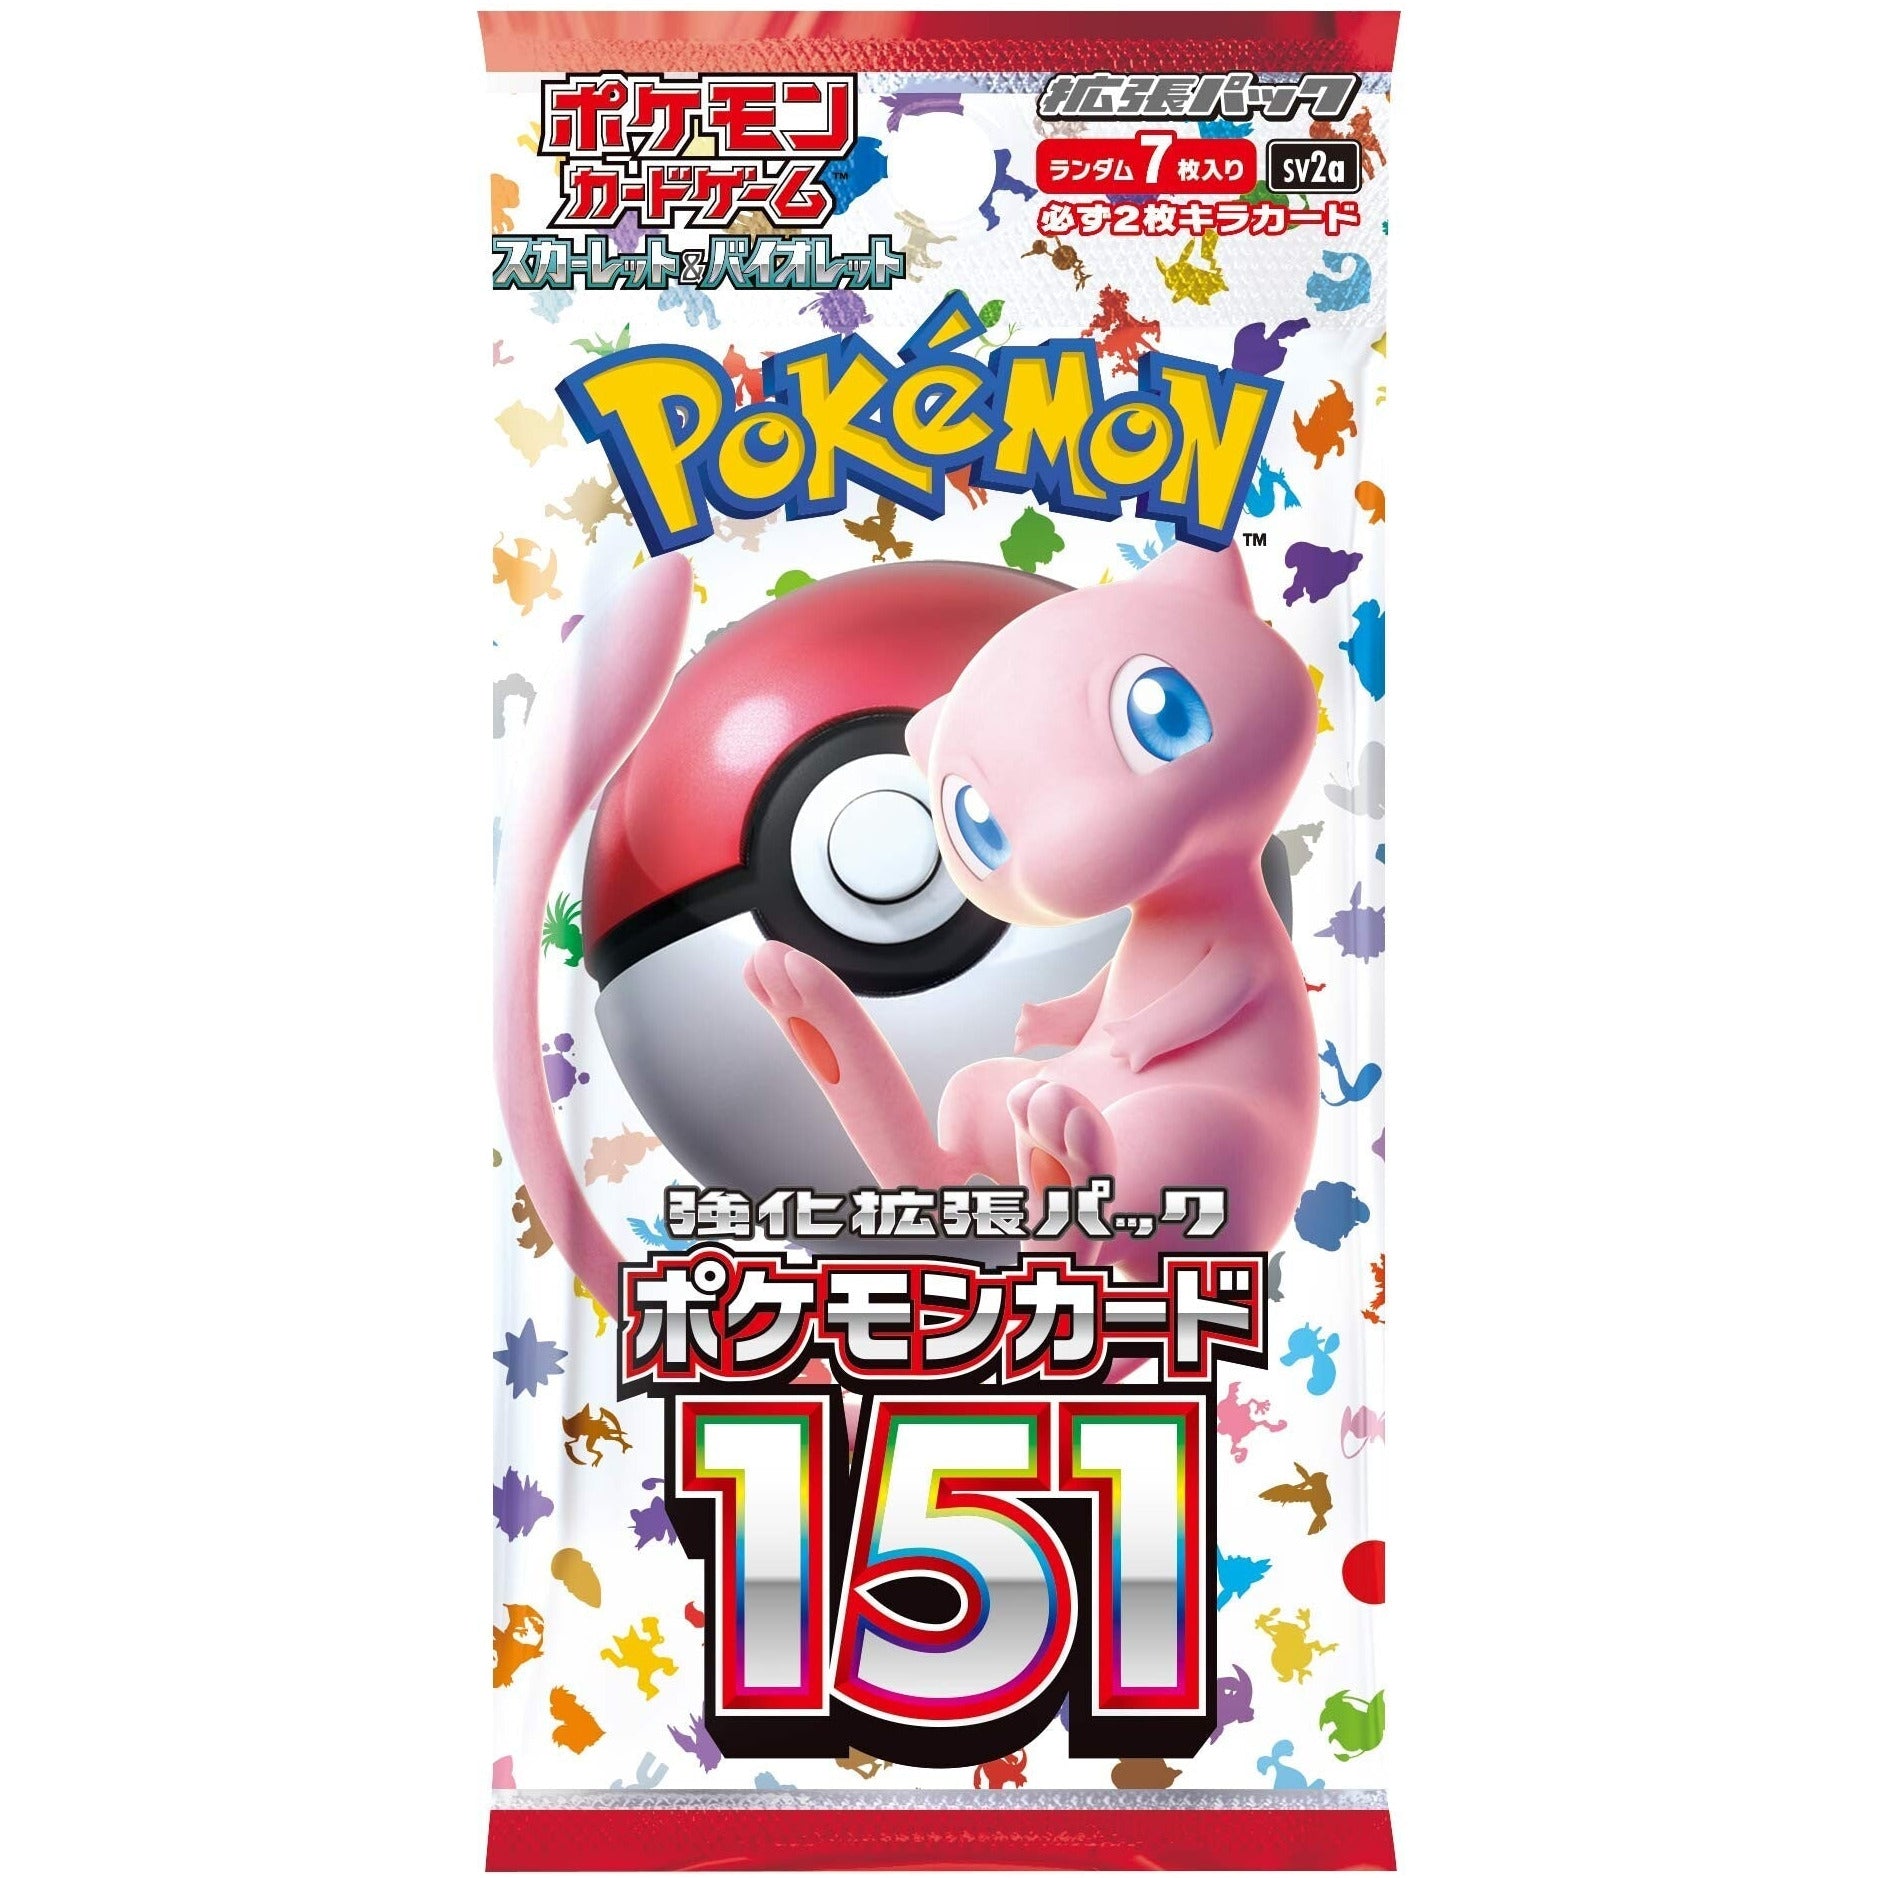 Pokémon TCG: Scarlet & Violet SV2a – Pokémon Card 151 Booster Pack (Japanese)